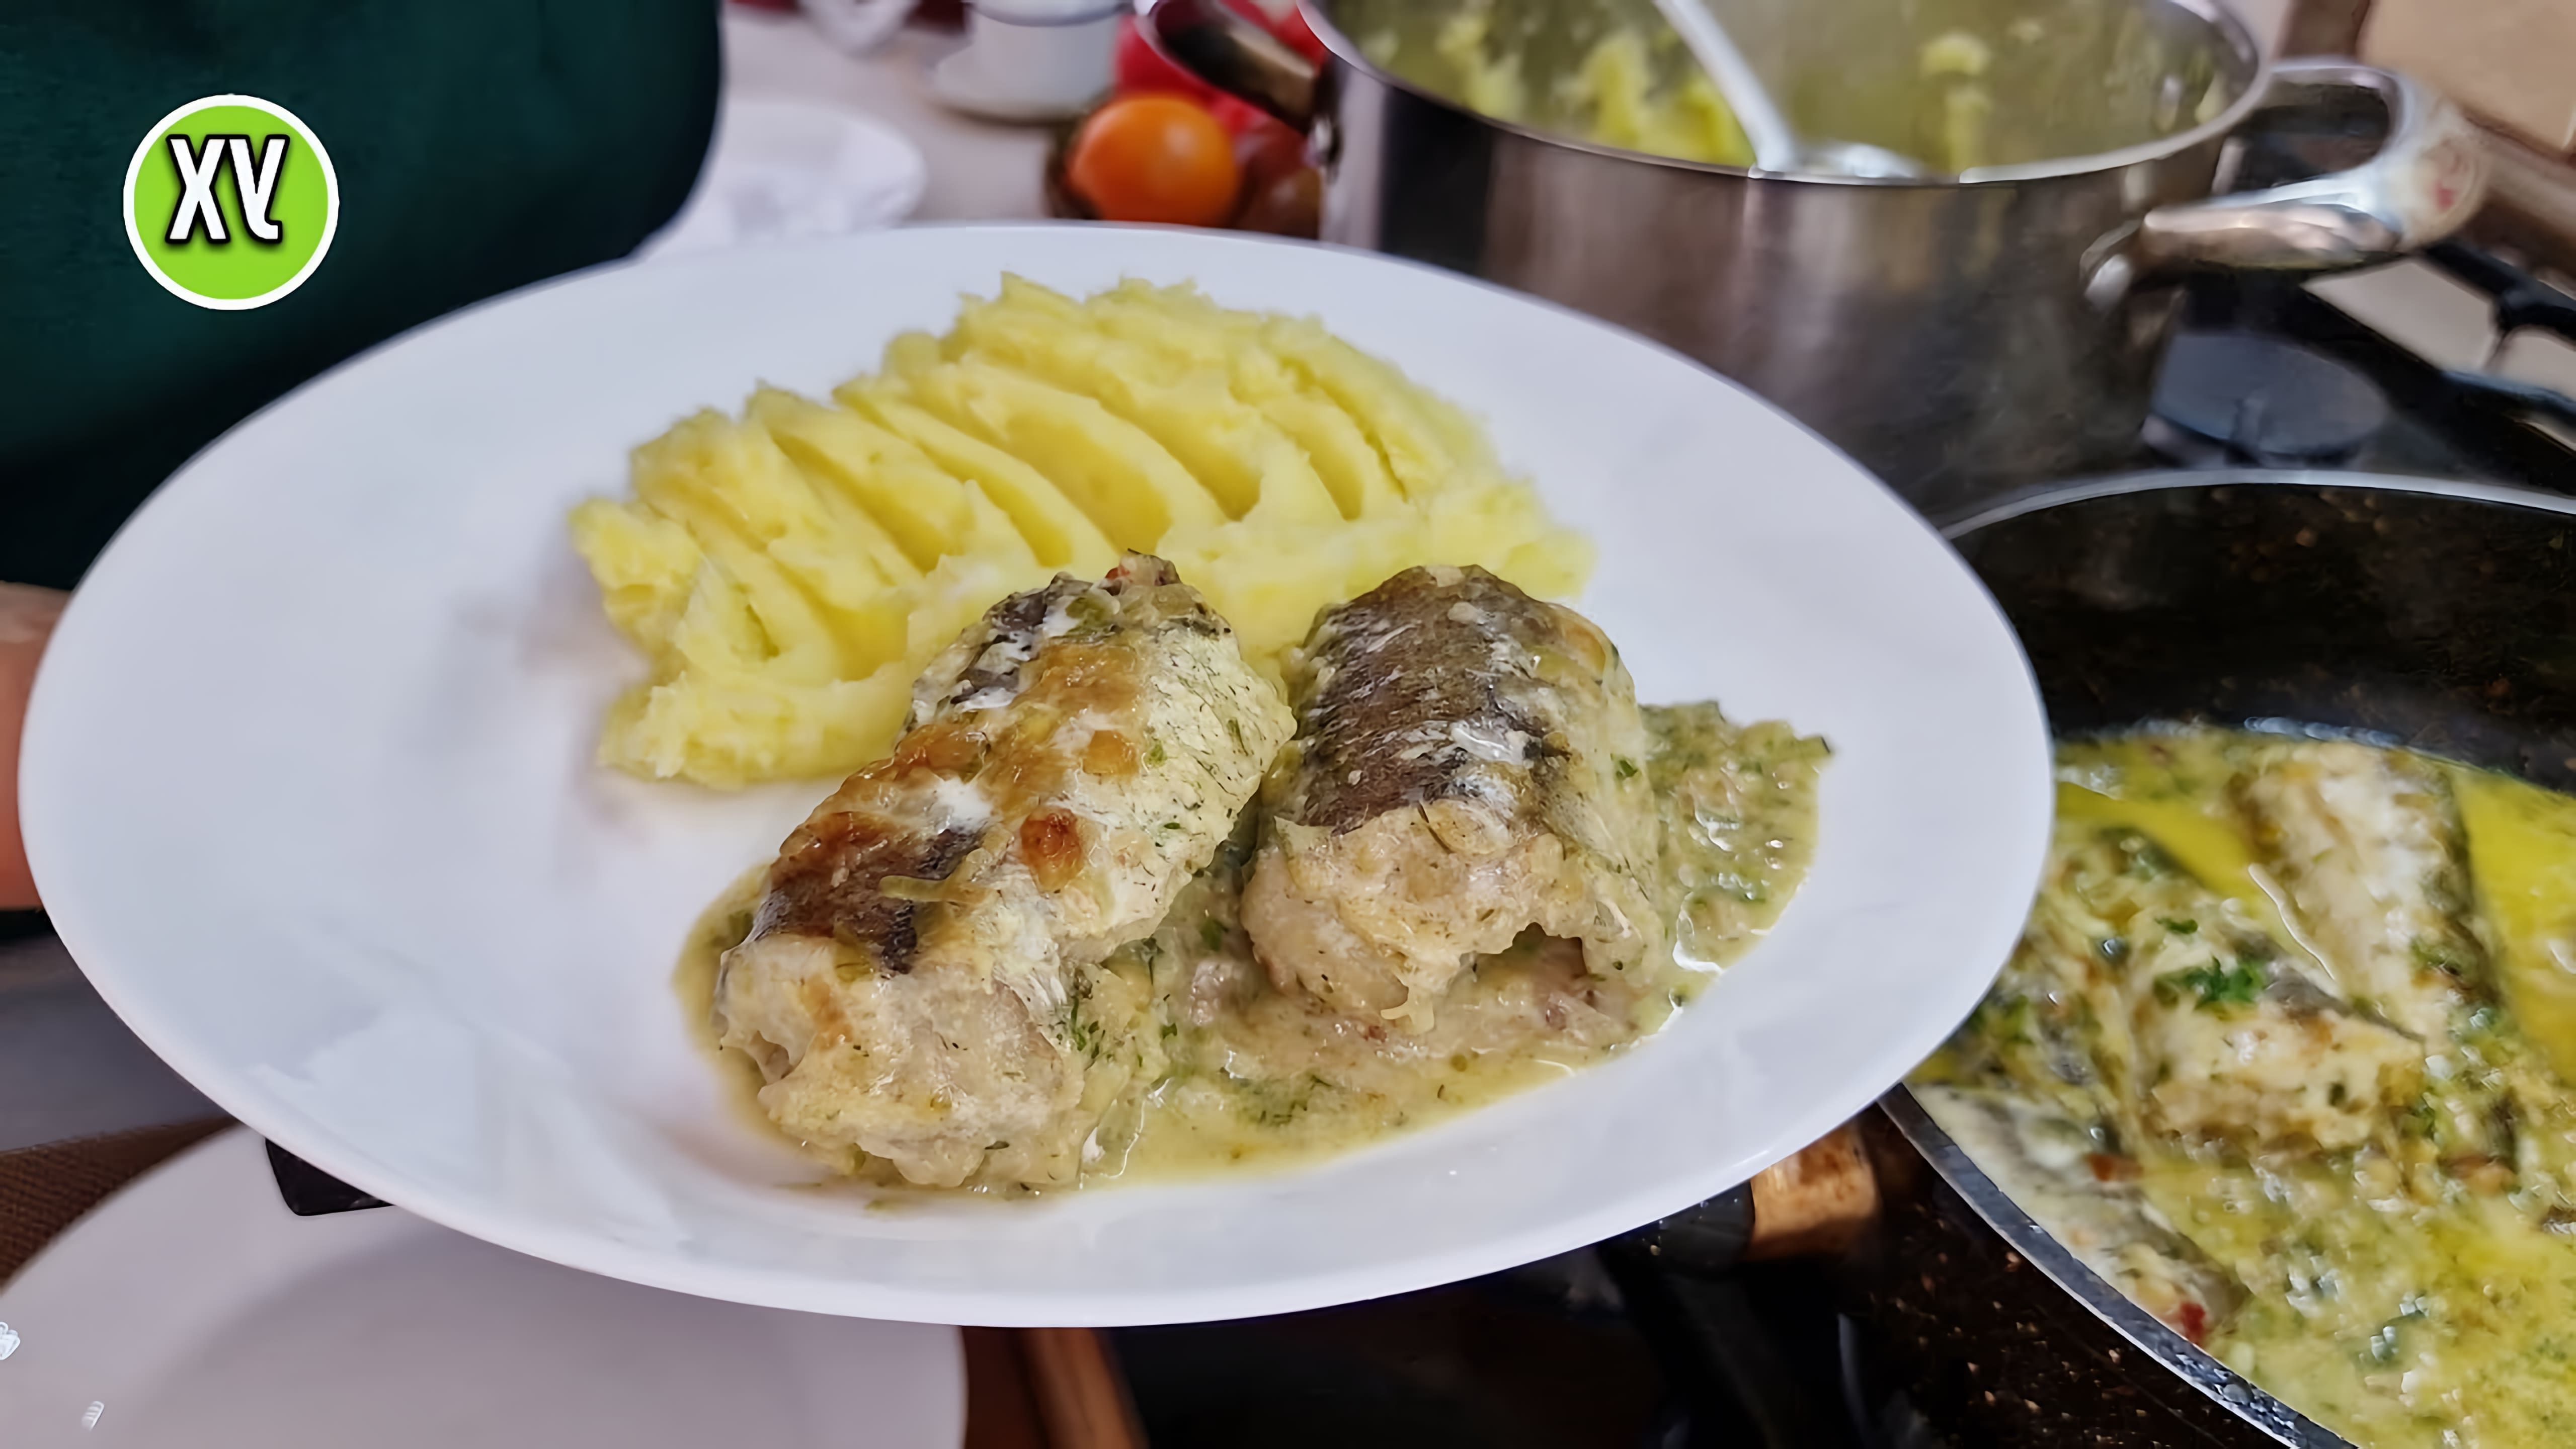 Видео рецепт еврейского рыбного блюда, которое включает в себя приготовление филе рыбы на плите с карамелизованным луком